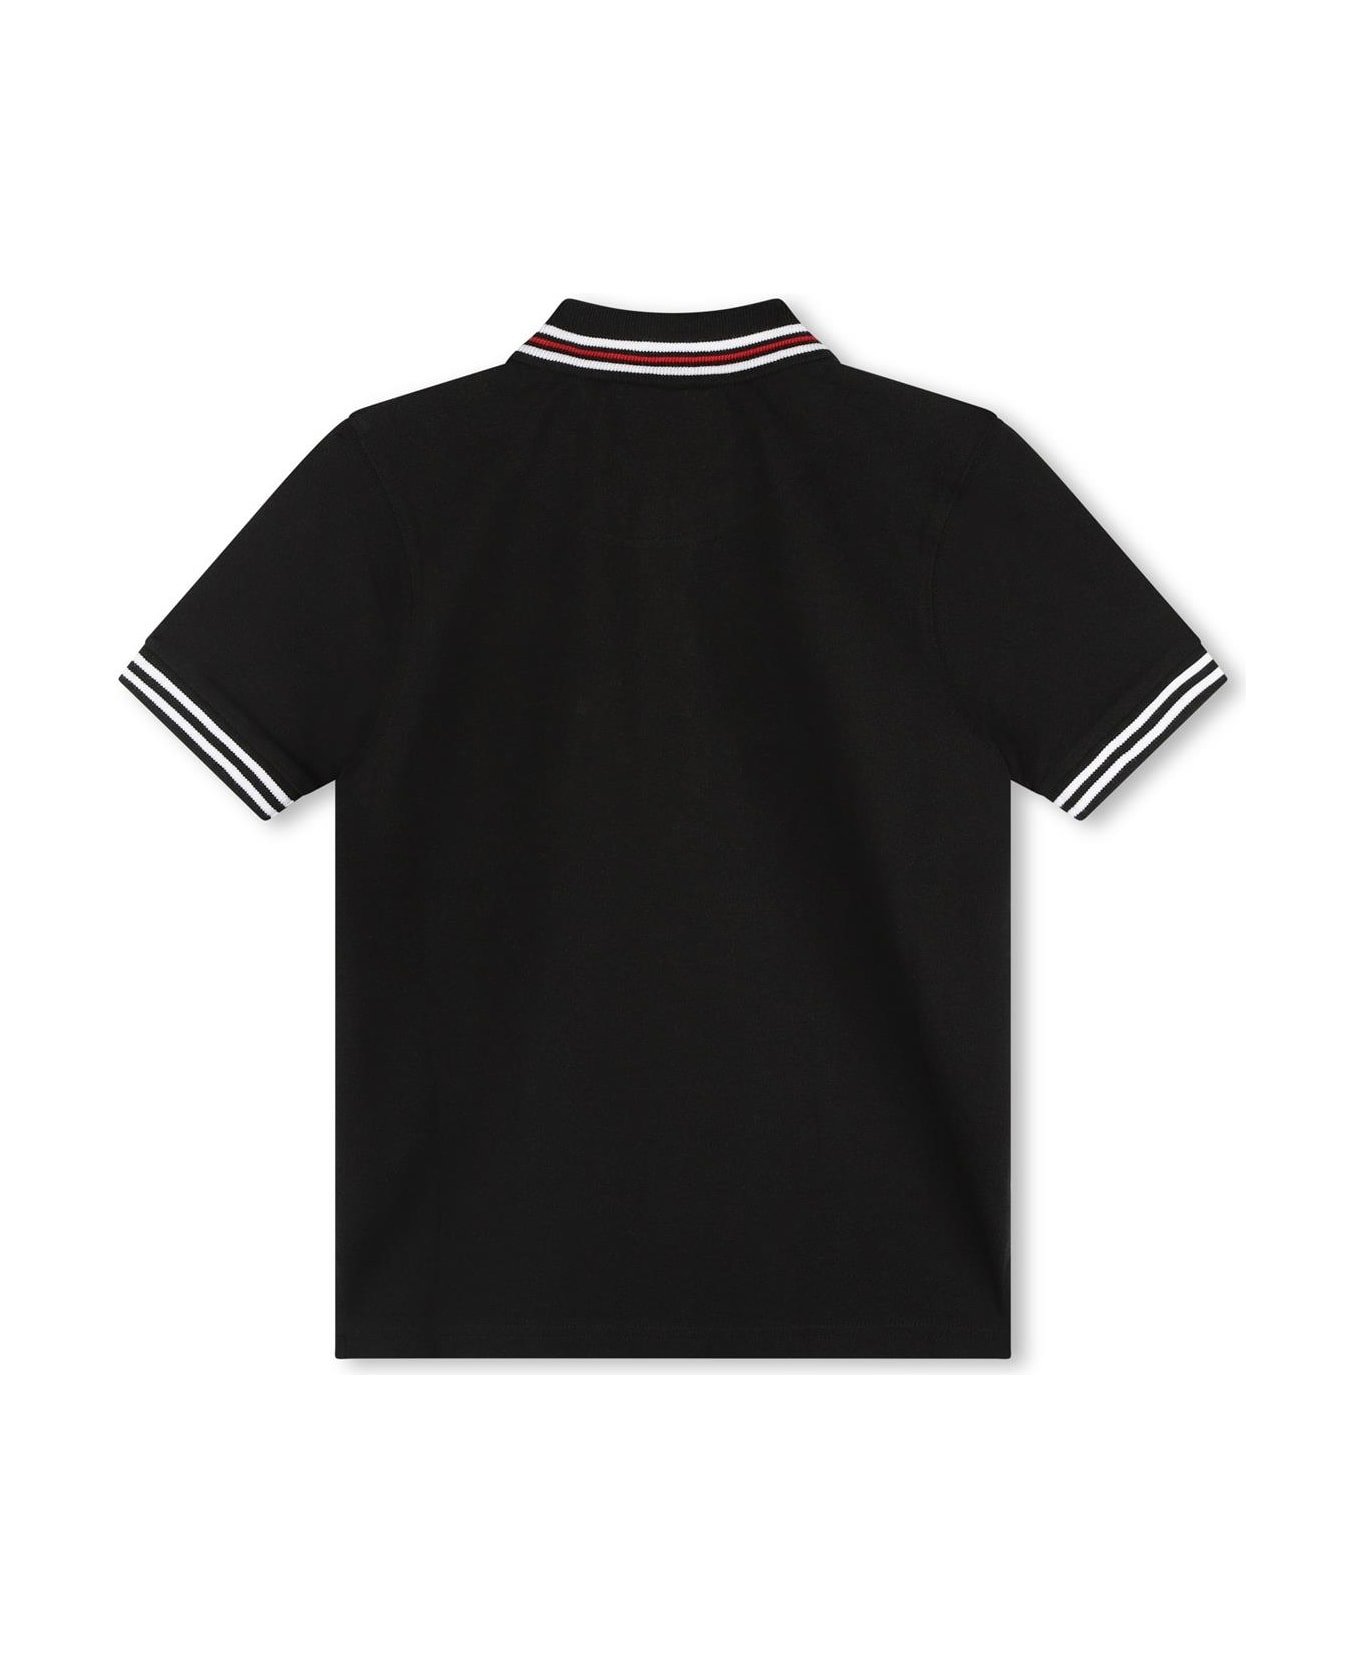 Hugo Boss Polo Shirt With Print - Black